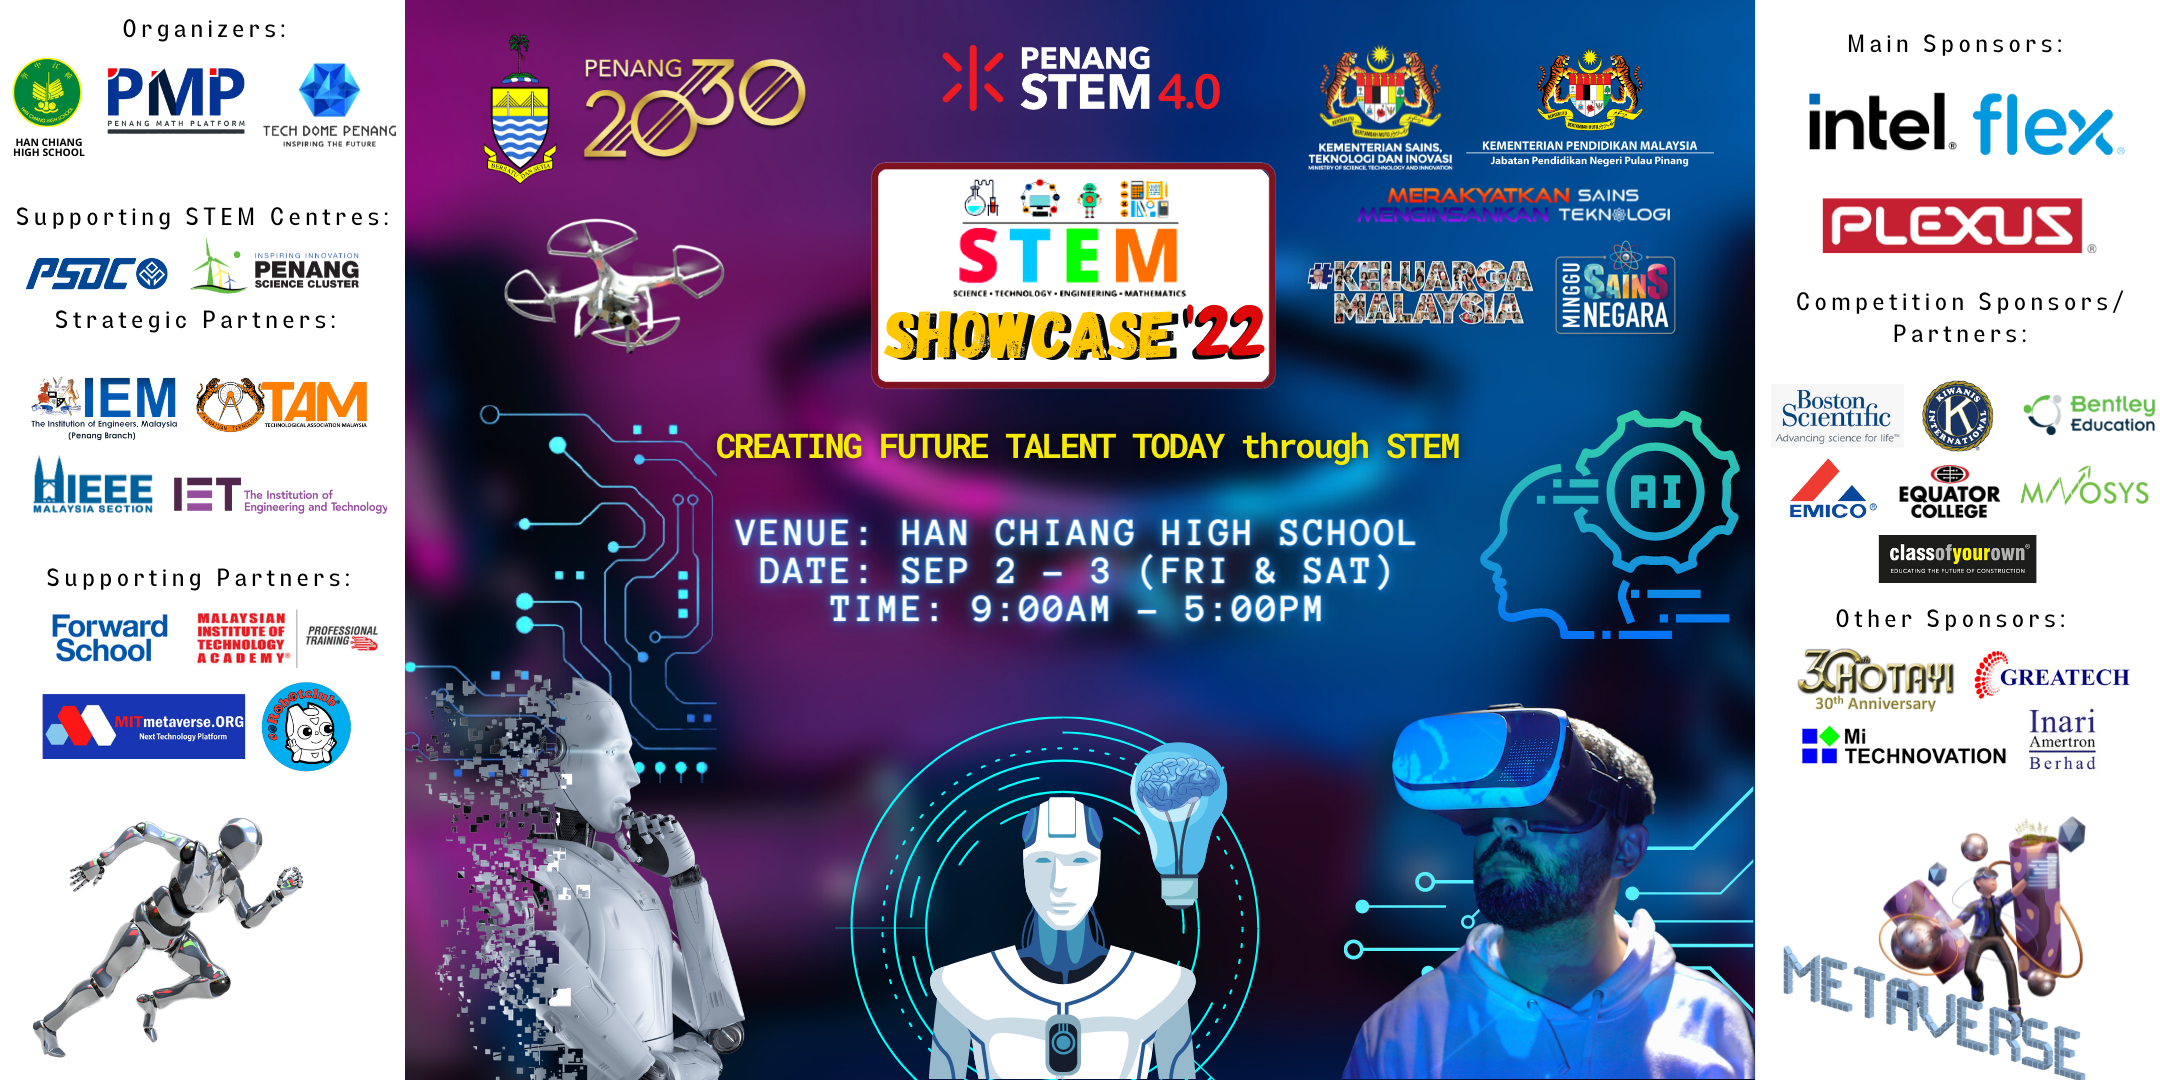 STEM Showcase '22